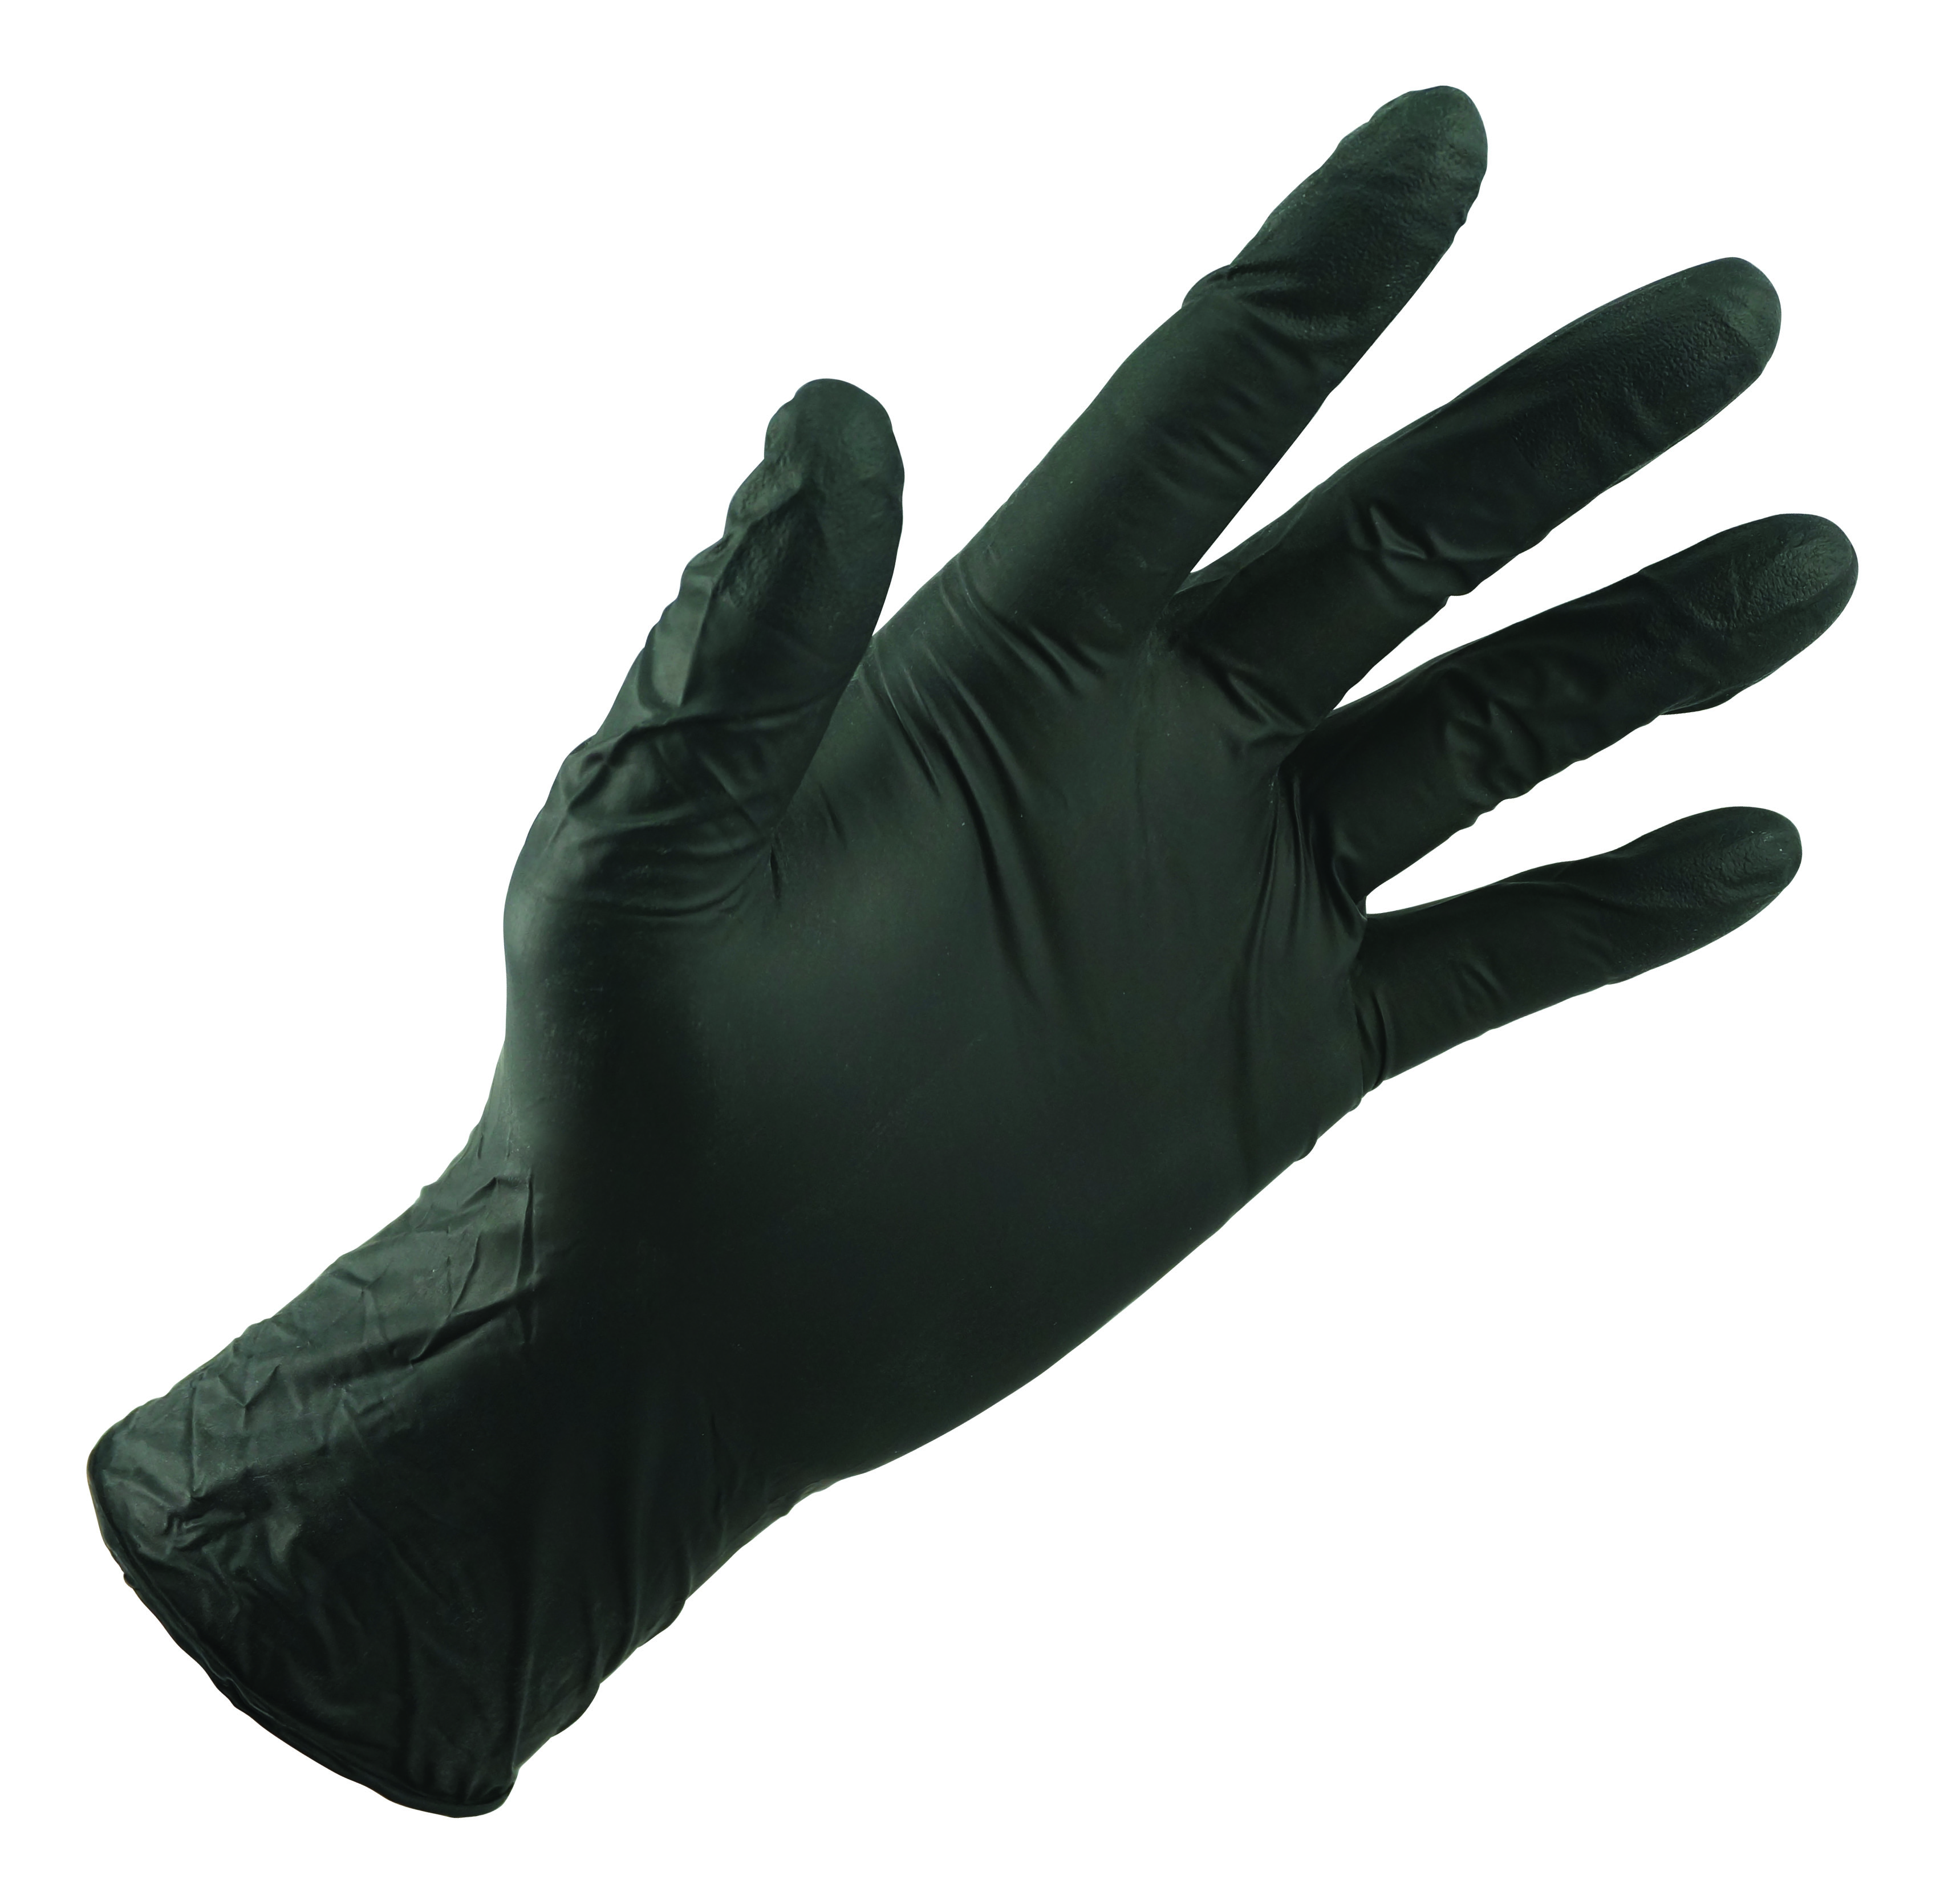 Flowerhorn reccomend Golden pacific, ultragard latex gloves